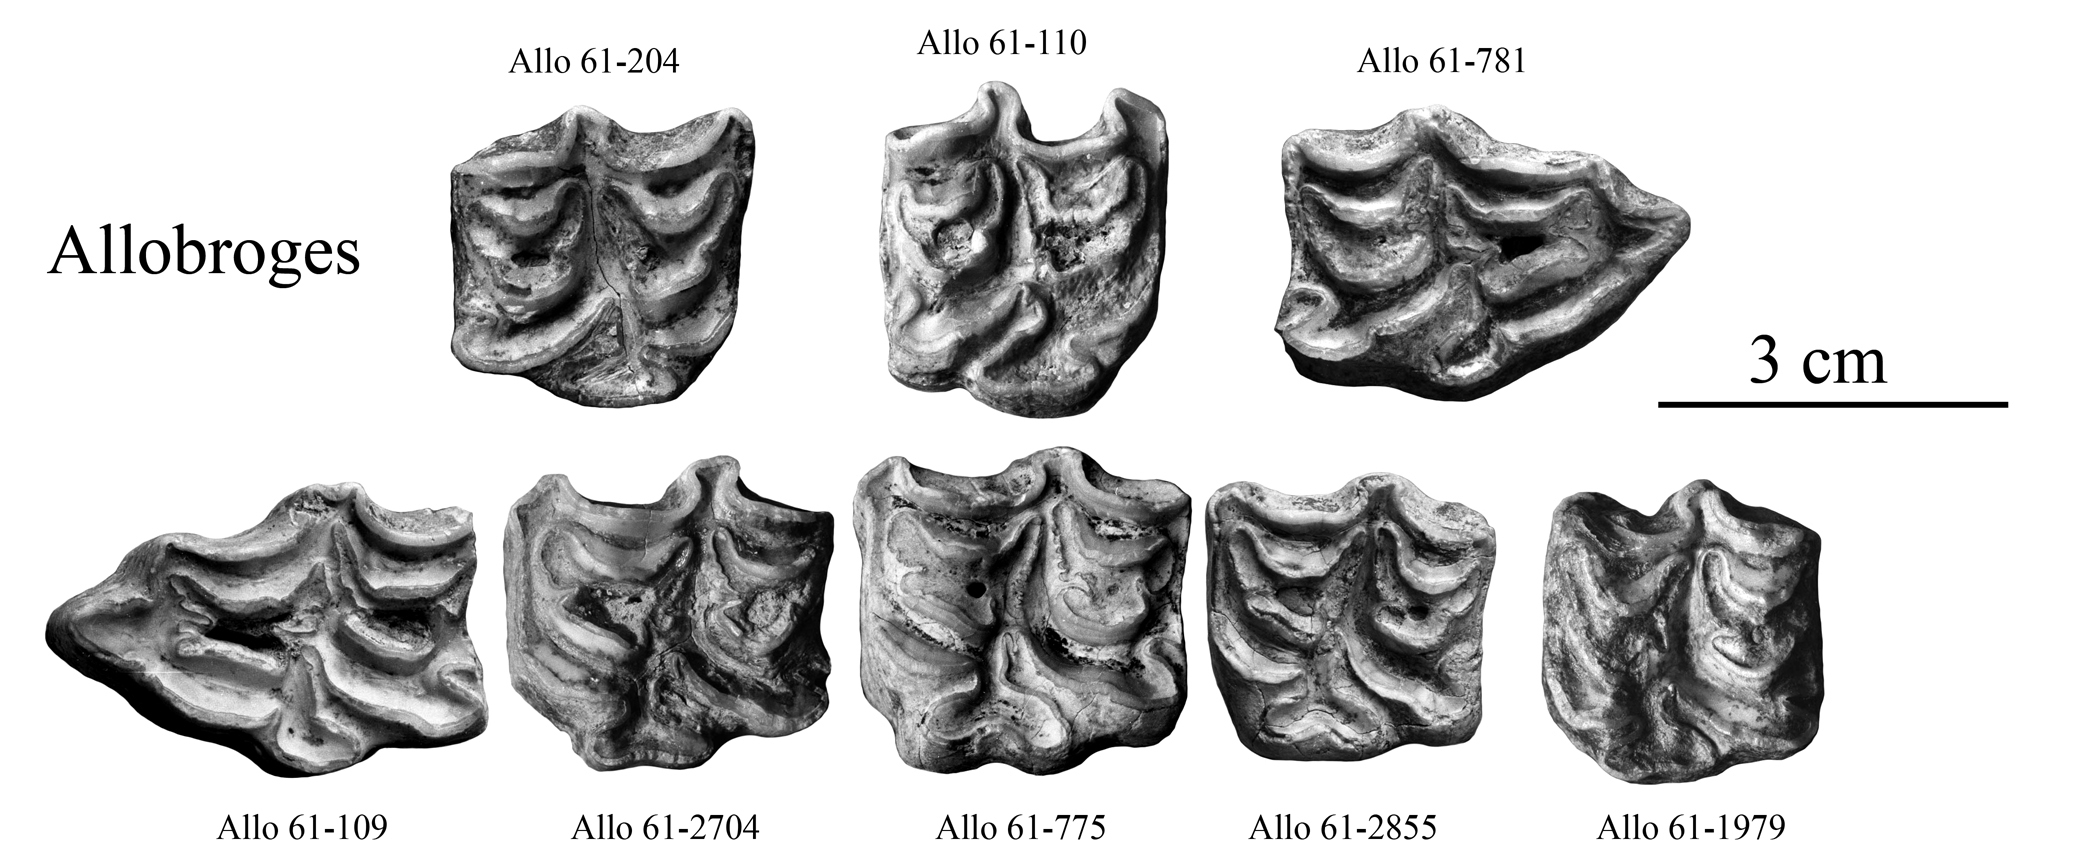 Equus melkiensis and E. aff. melkiensis, Upper cheek teeth